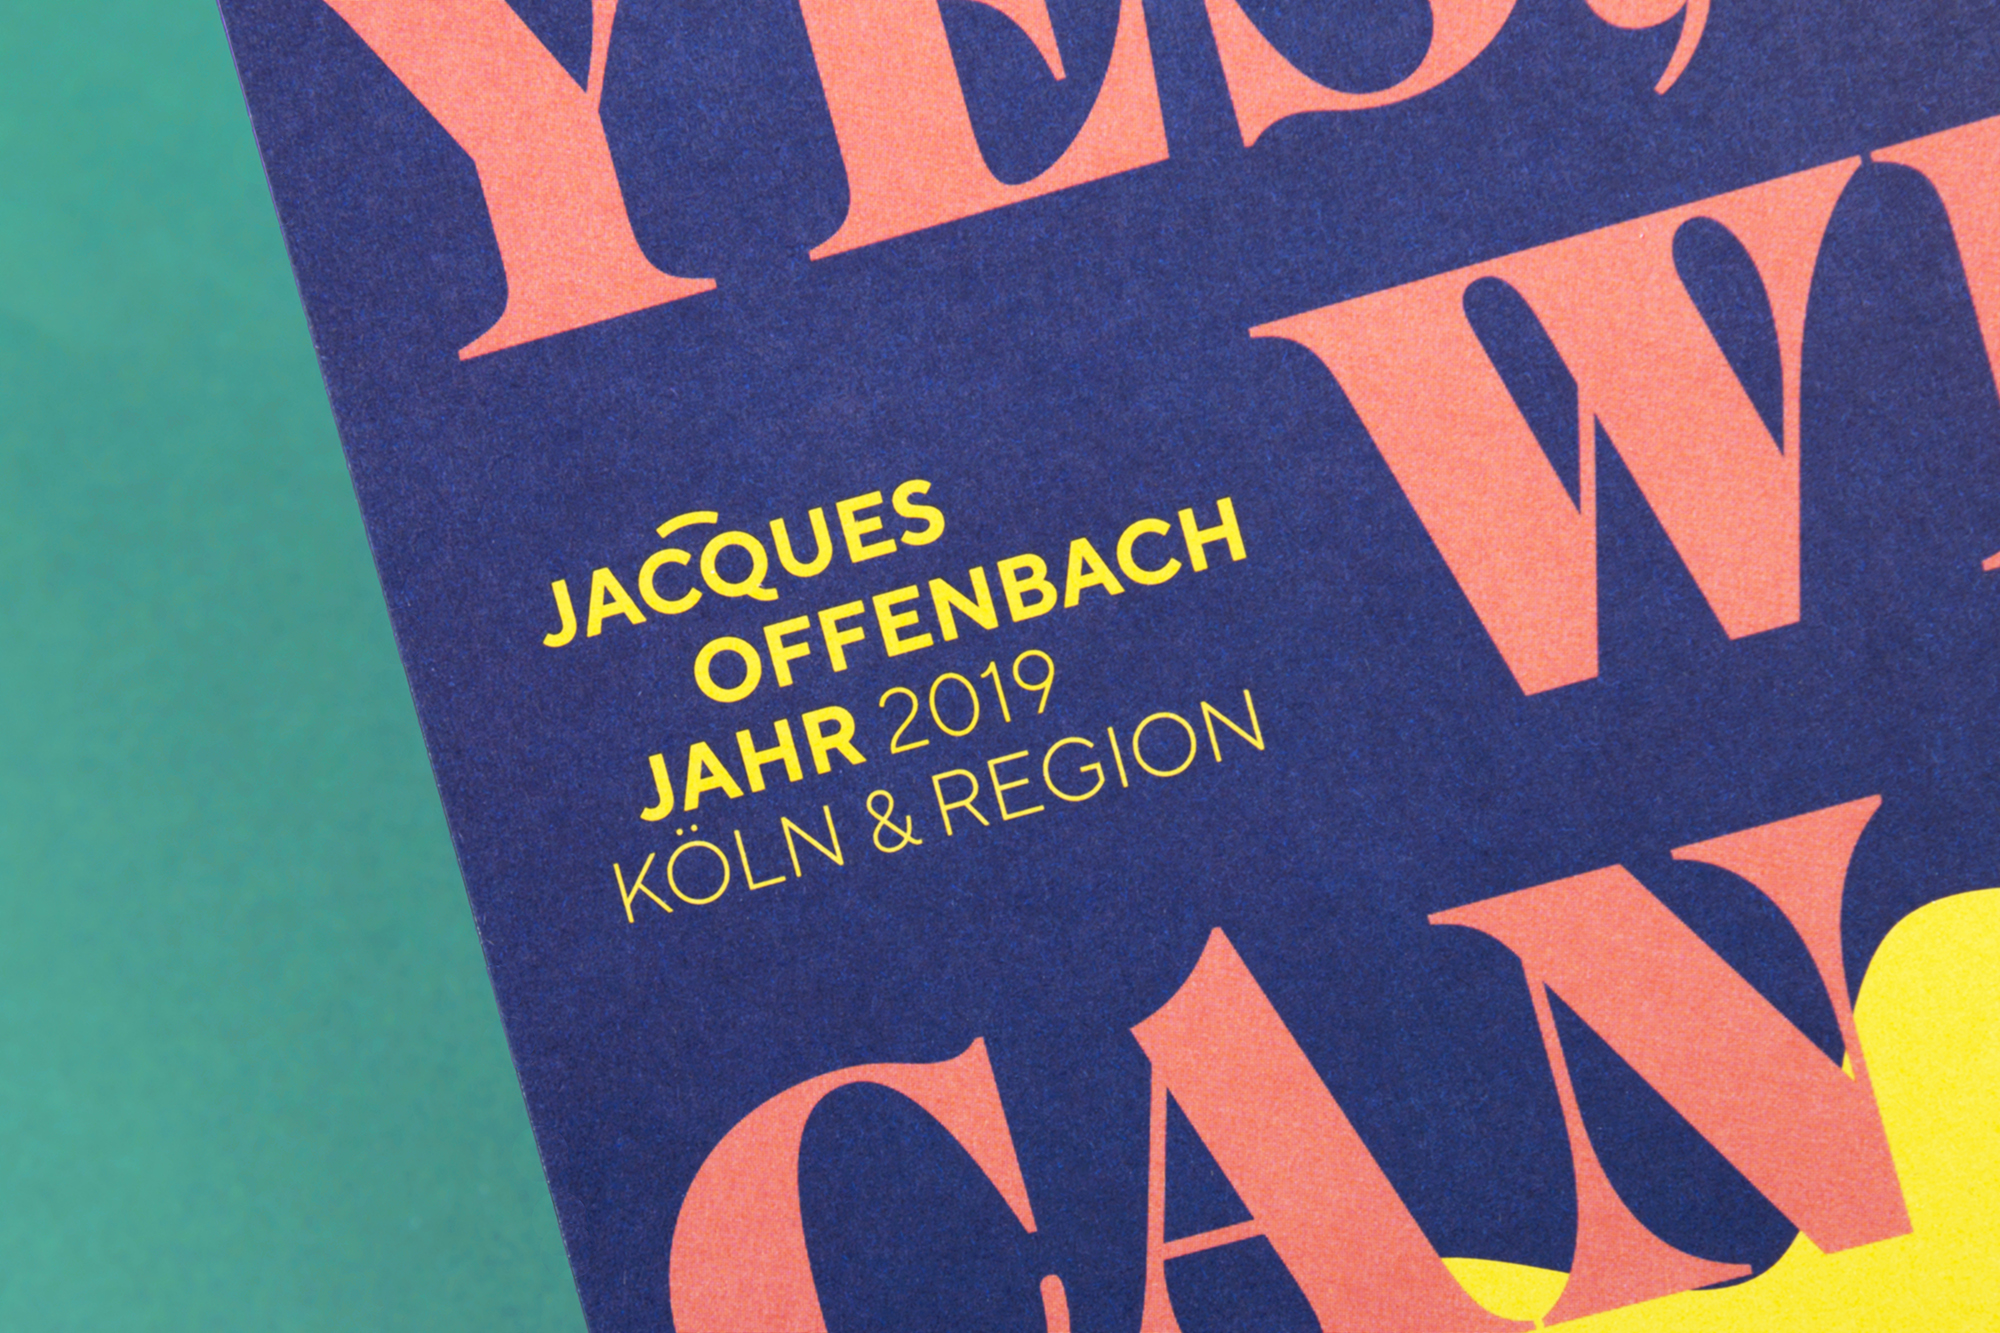 Jacques Offenbach Jahr 2019